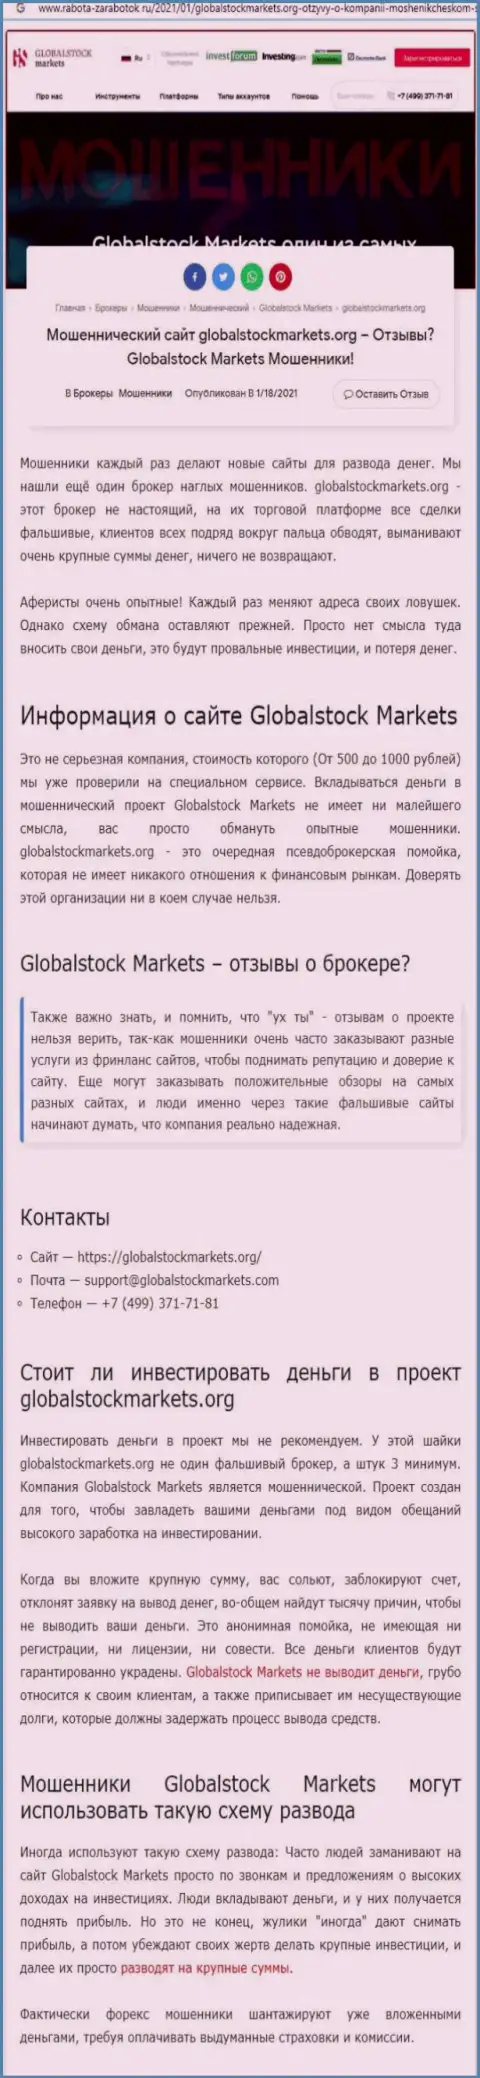 GlobalStockMarkets Org - это РАЗВОДИЛОВО НА ФИНАНСОВЫЕ СРЕДСТВА ! БУДЬТЕ ОЧЕНЬ ВНИМАТЕЛЬНЫ (статья с анализом)